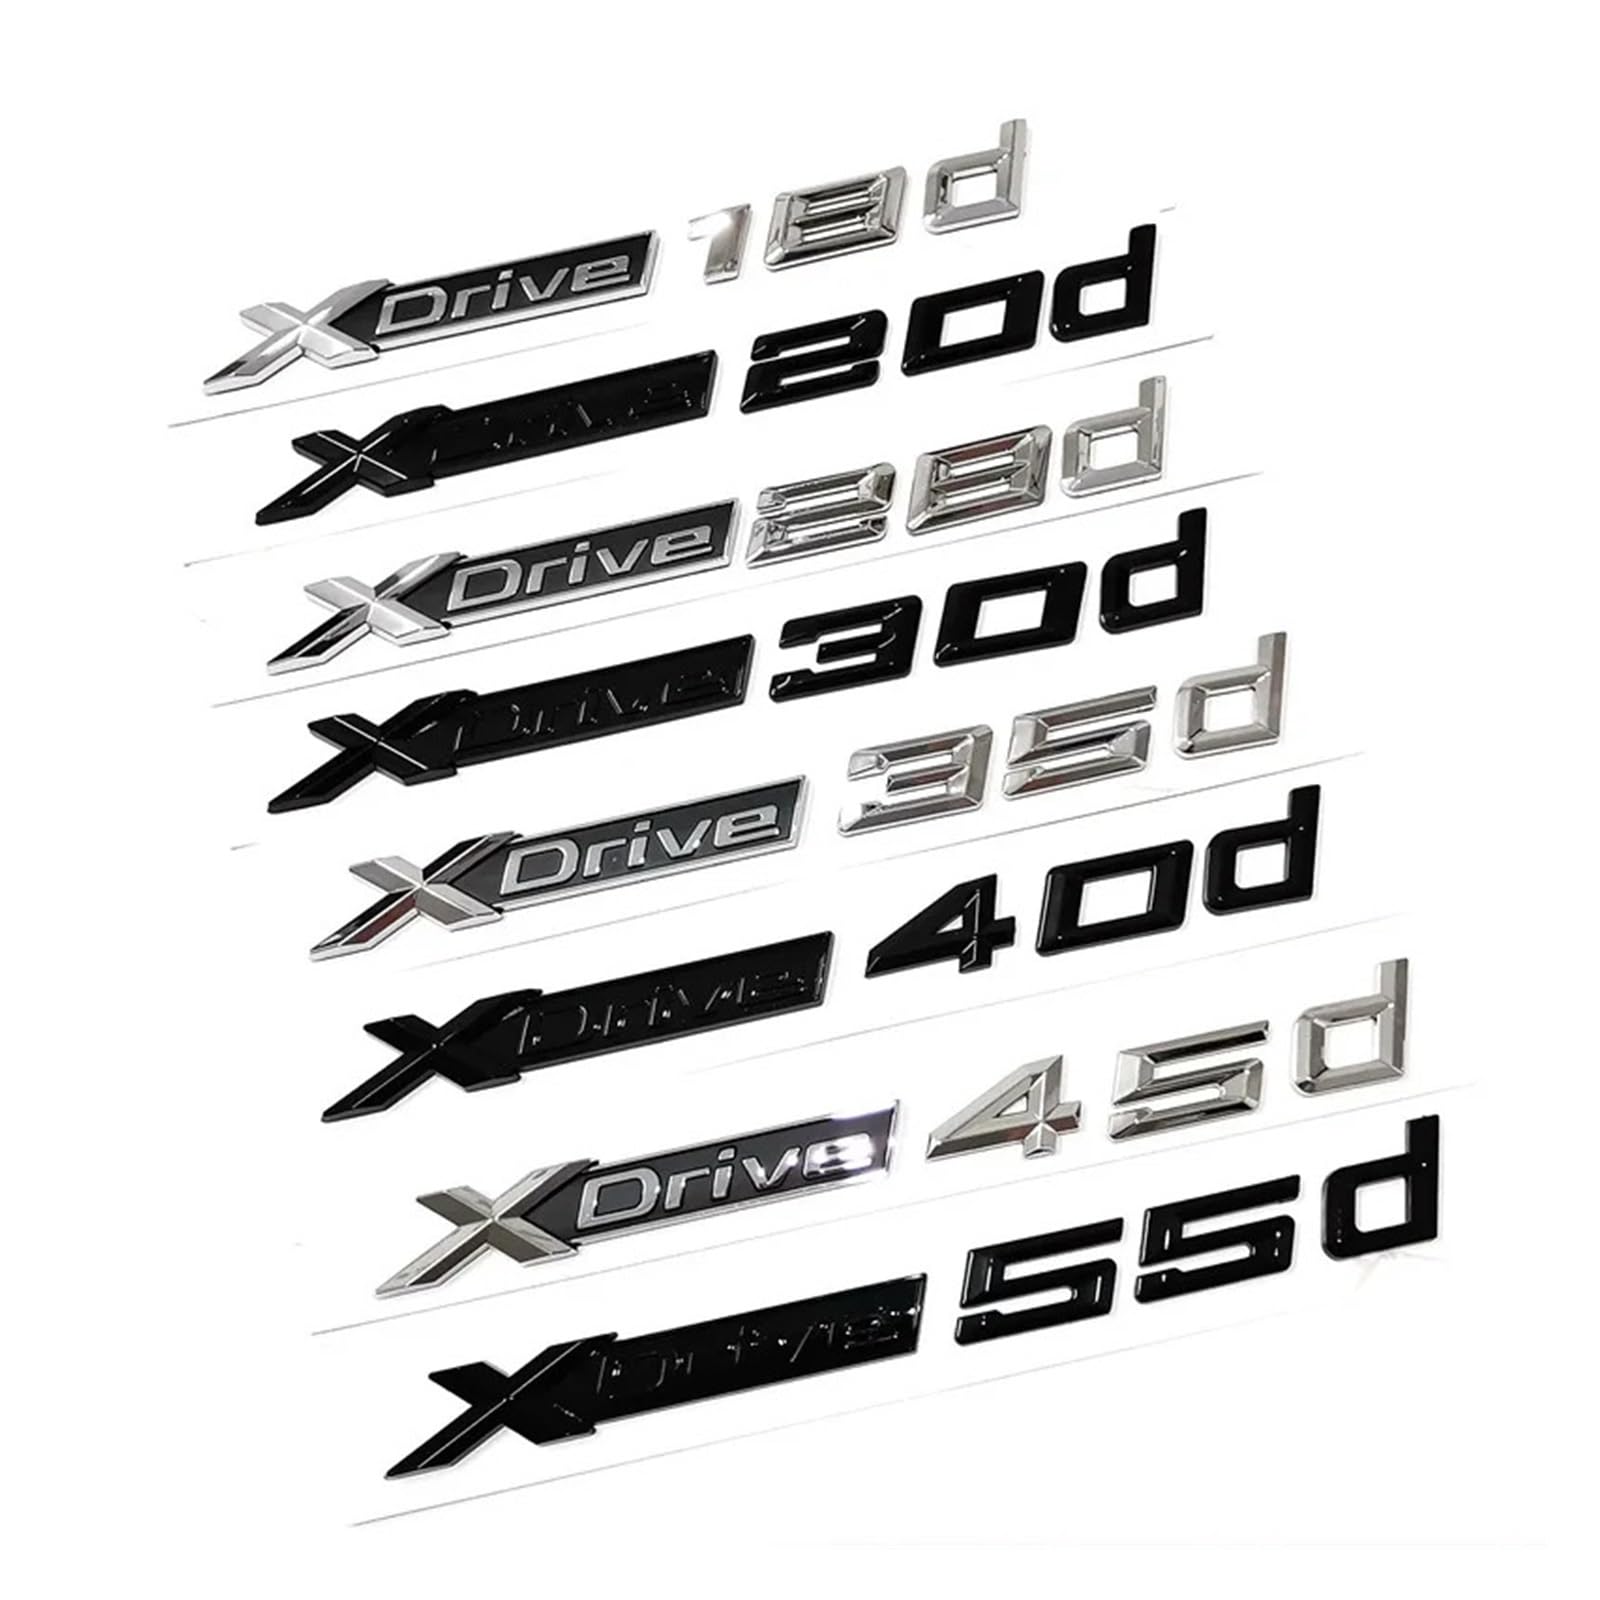 Aqxyju 3D Xdrive 20d 30d 35d 40d 50d 20i 25i 30i Auto-Emblem-Kofferraum-Abzeichen-Aufkleber Kompatibel mit X1 X3 X4 X5 X6 X7 Logo-Zubehör Personalisierte Auto Aufkleber(Glossy Black,Xdrive 28d) von Aqxyju